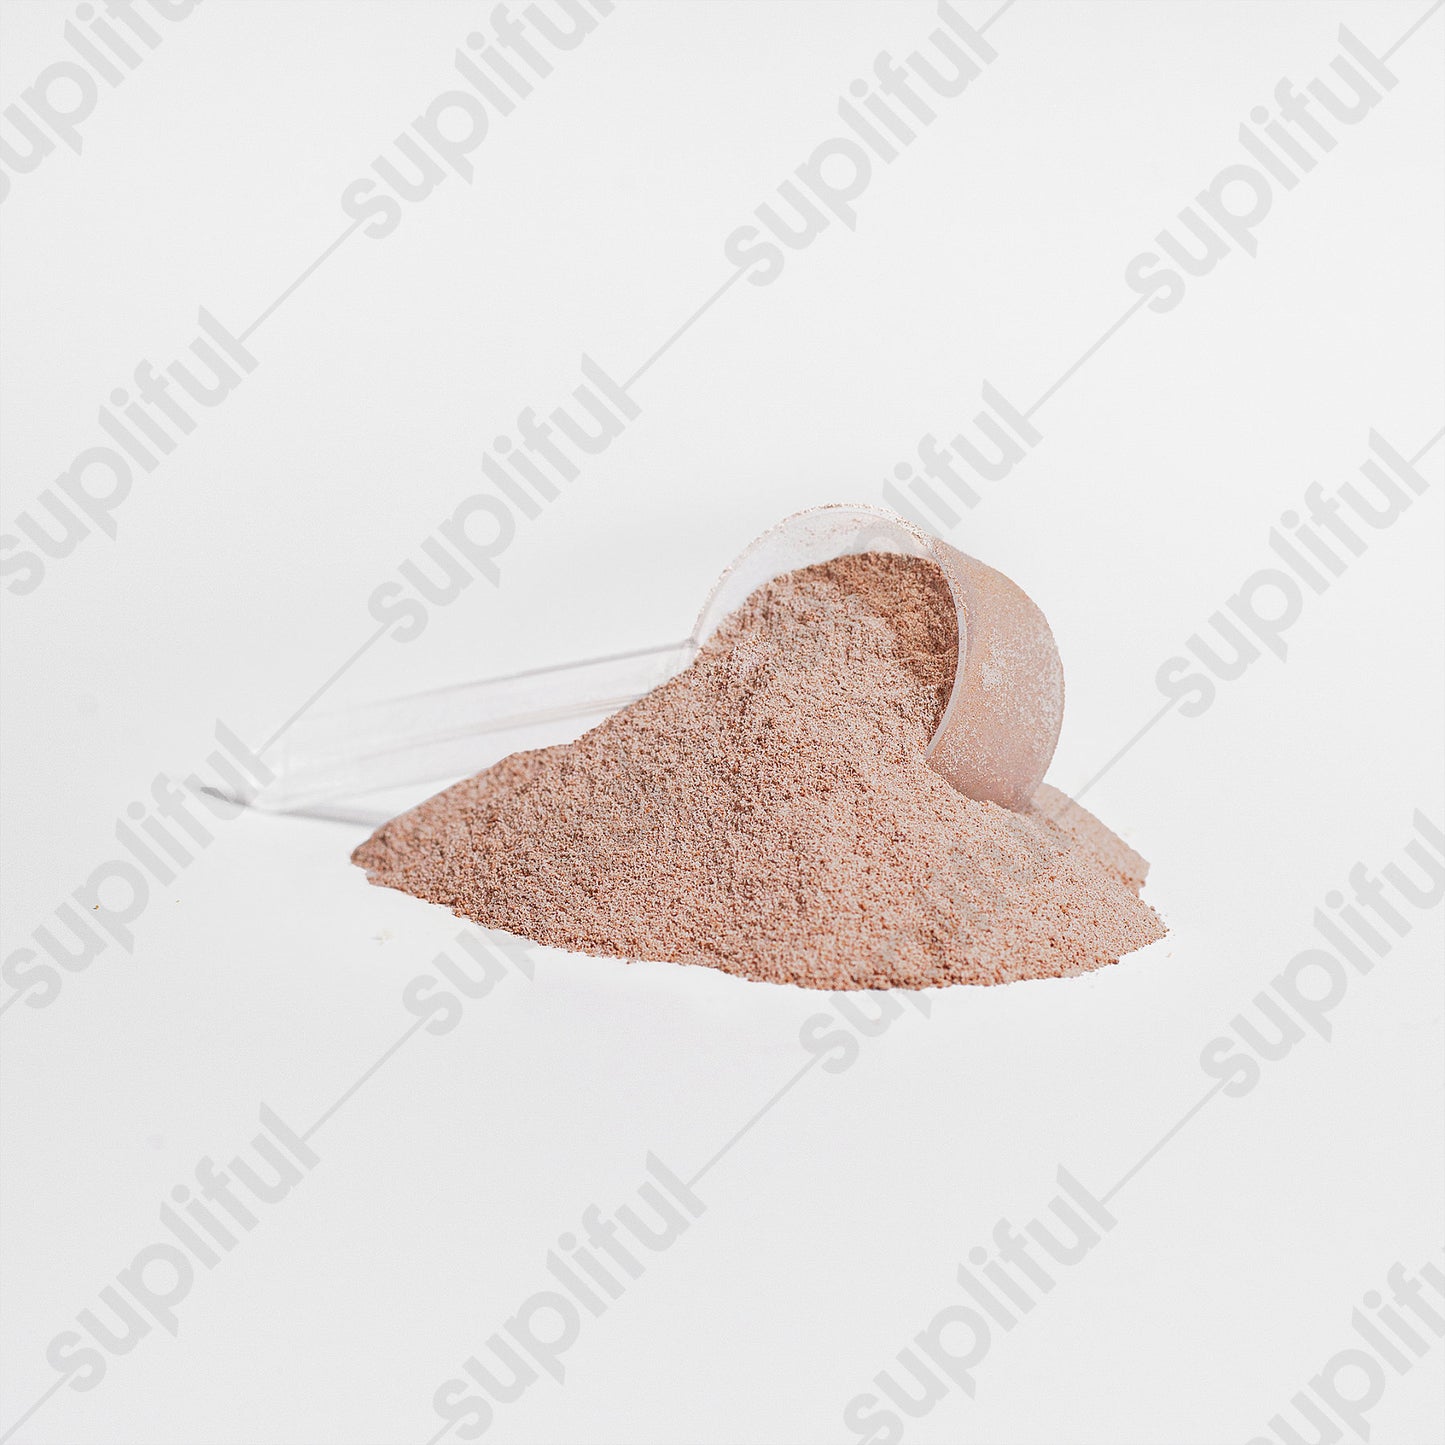 Collagen Protein Booster Grass-Fed Collagen Powder (Chocolate)